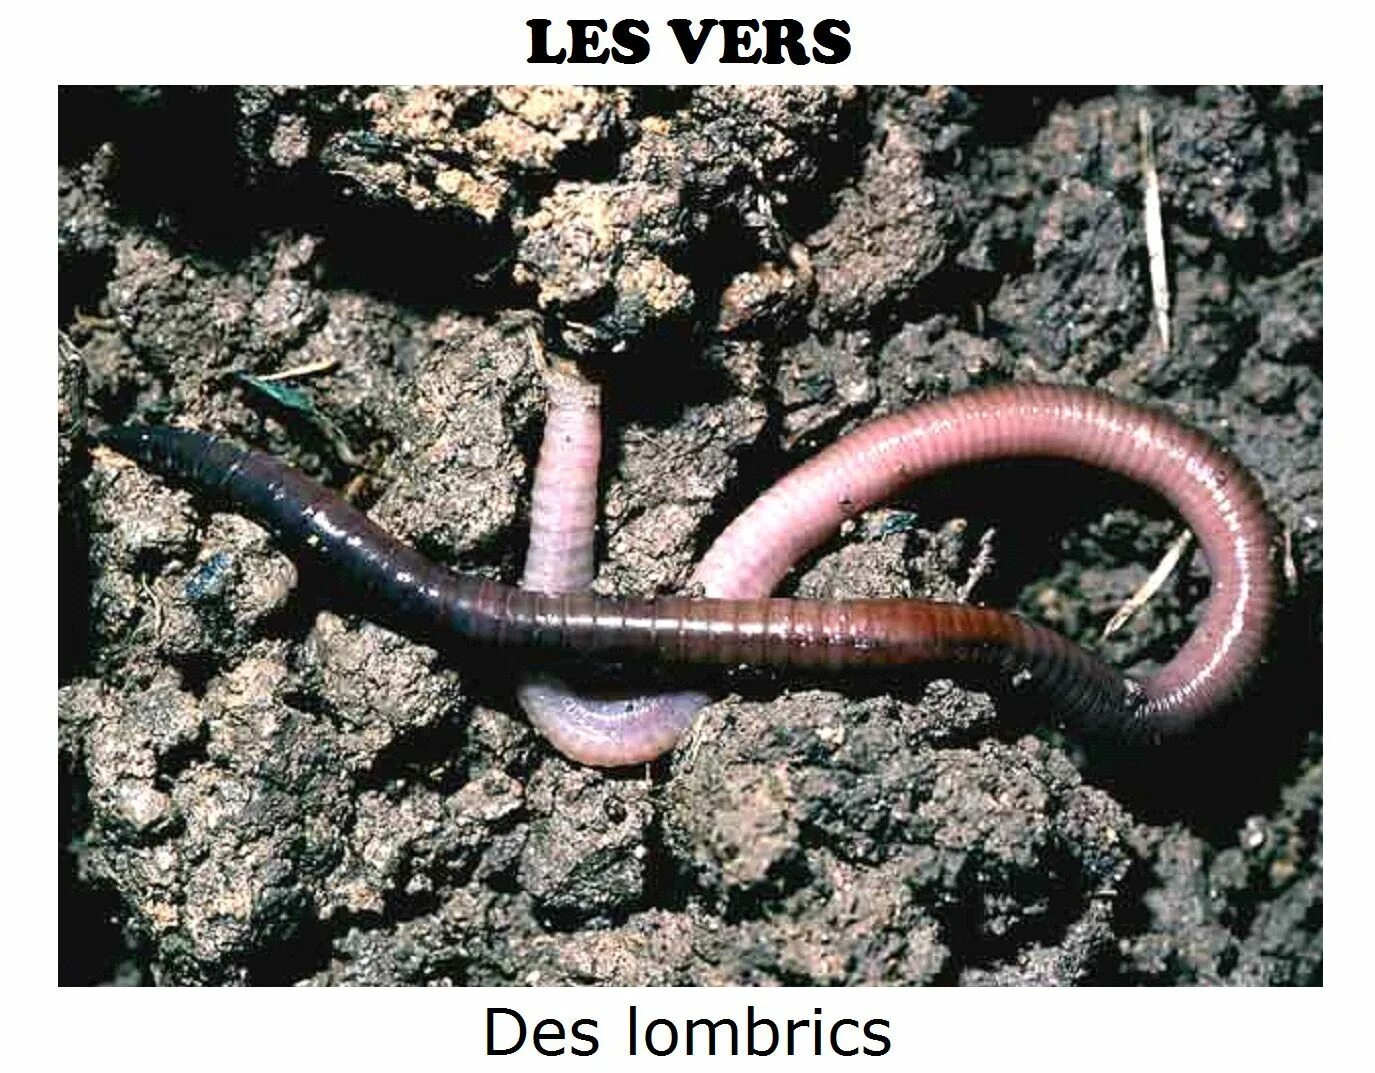 Дождевой червь какая группа животных. Малощетинковые дождевой червь. Червь Земляной (Lumbricus terrestris). Кольчатые черви олигохеты. Дождевые черви среда обитания.